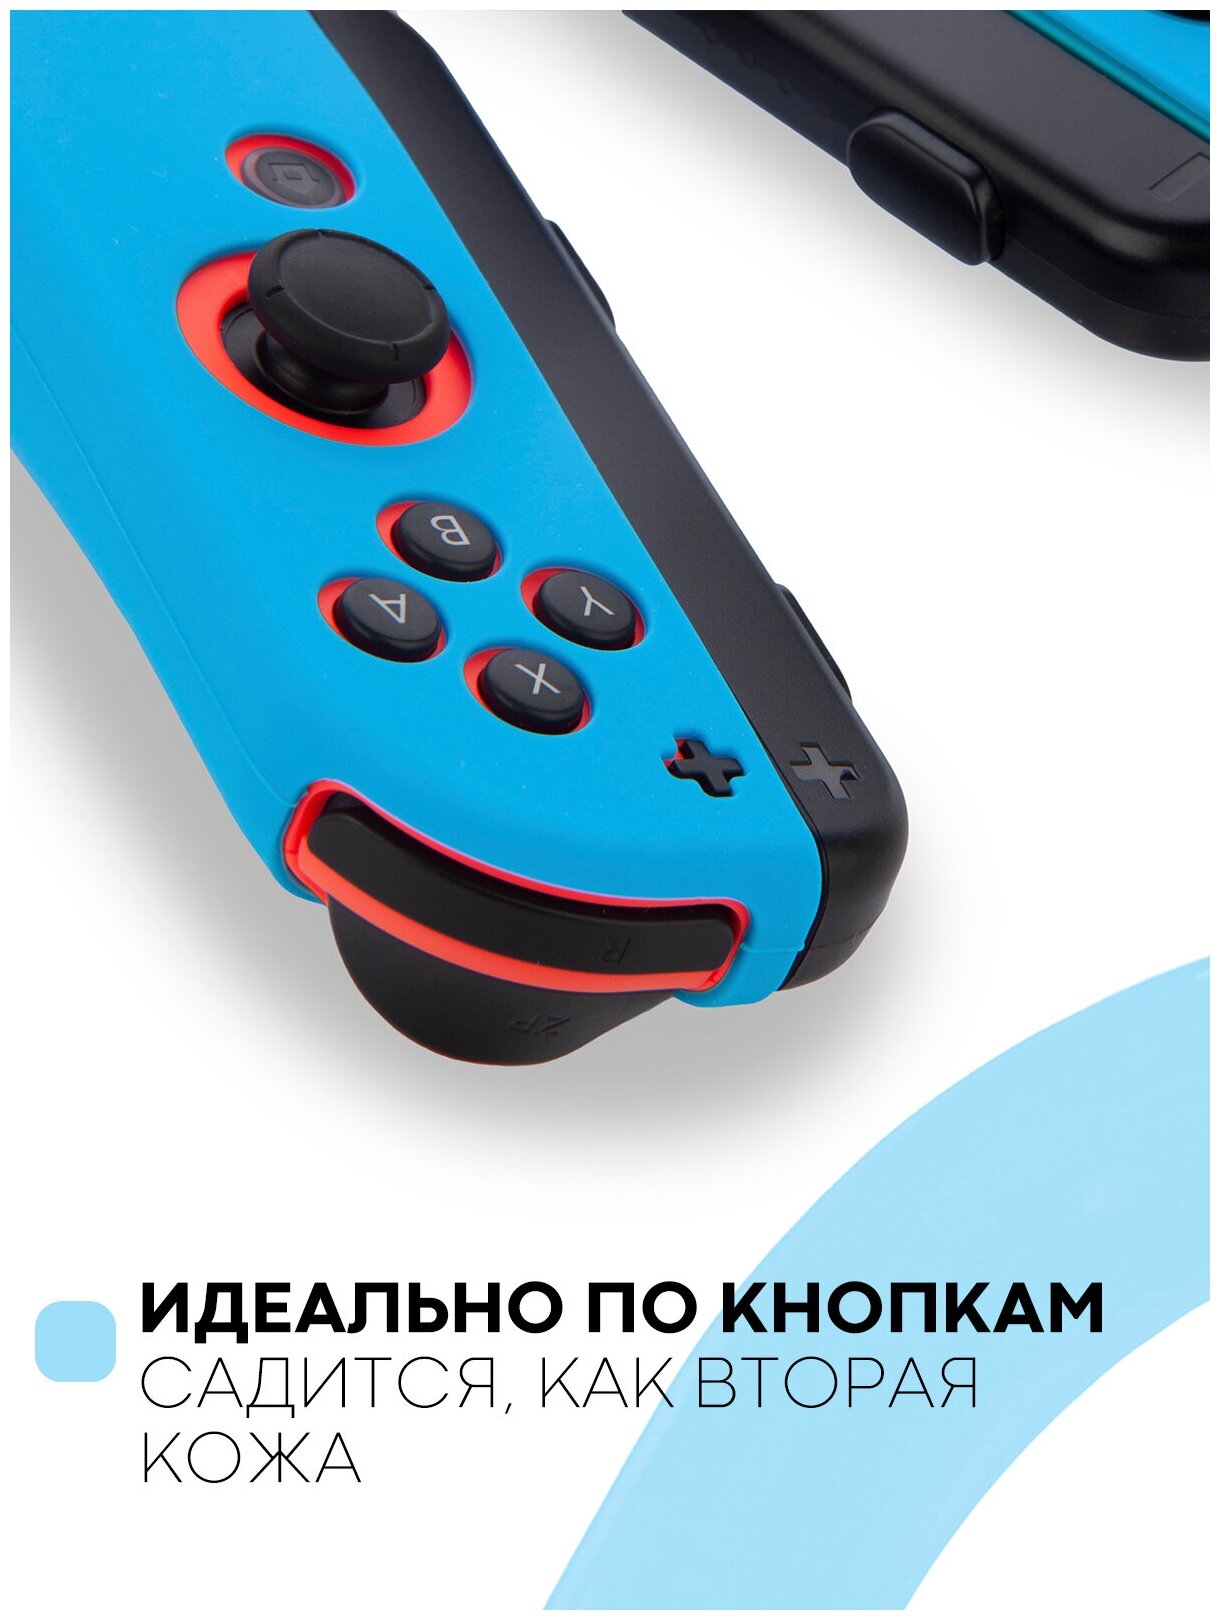 Набор защитные чехлы накладки для контроллера Joy-Con Nintendo Switch, Nintendo Switch OLED (чехол на джойкон Нинтендо Свитч), силиконовые, синие, 2 шт